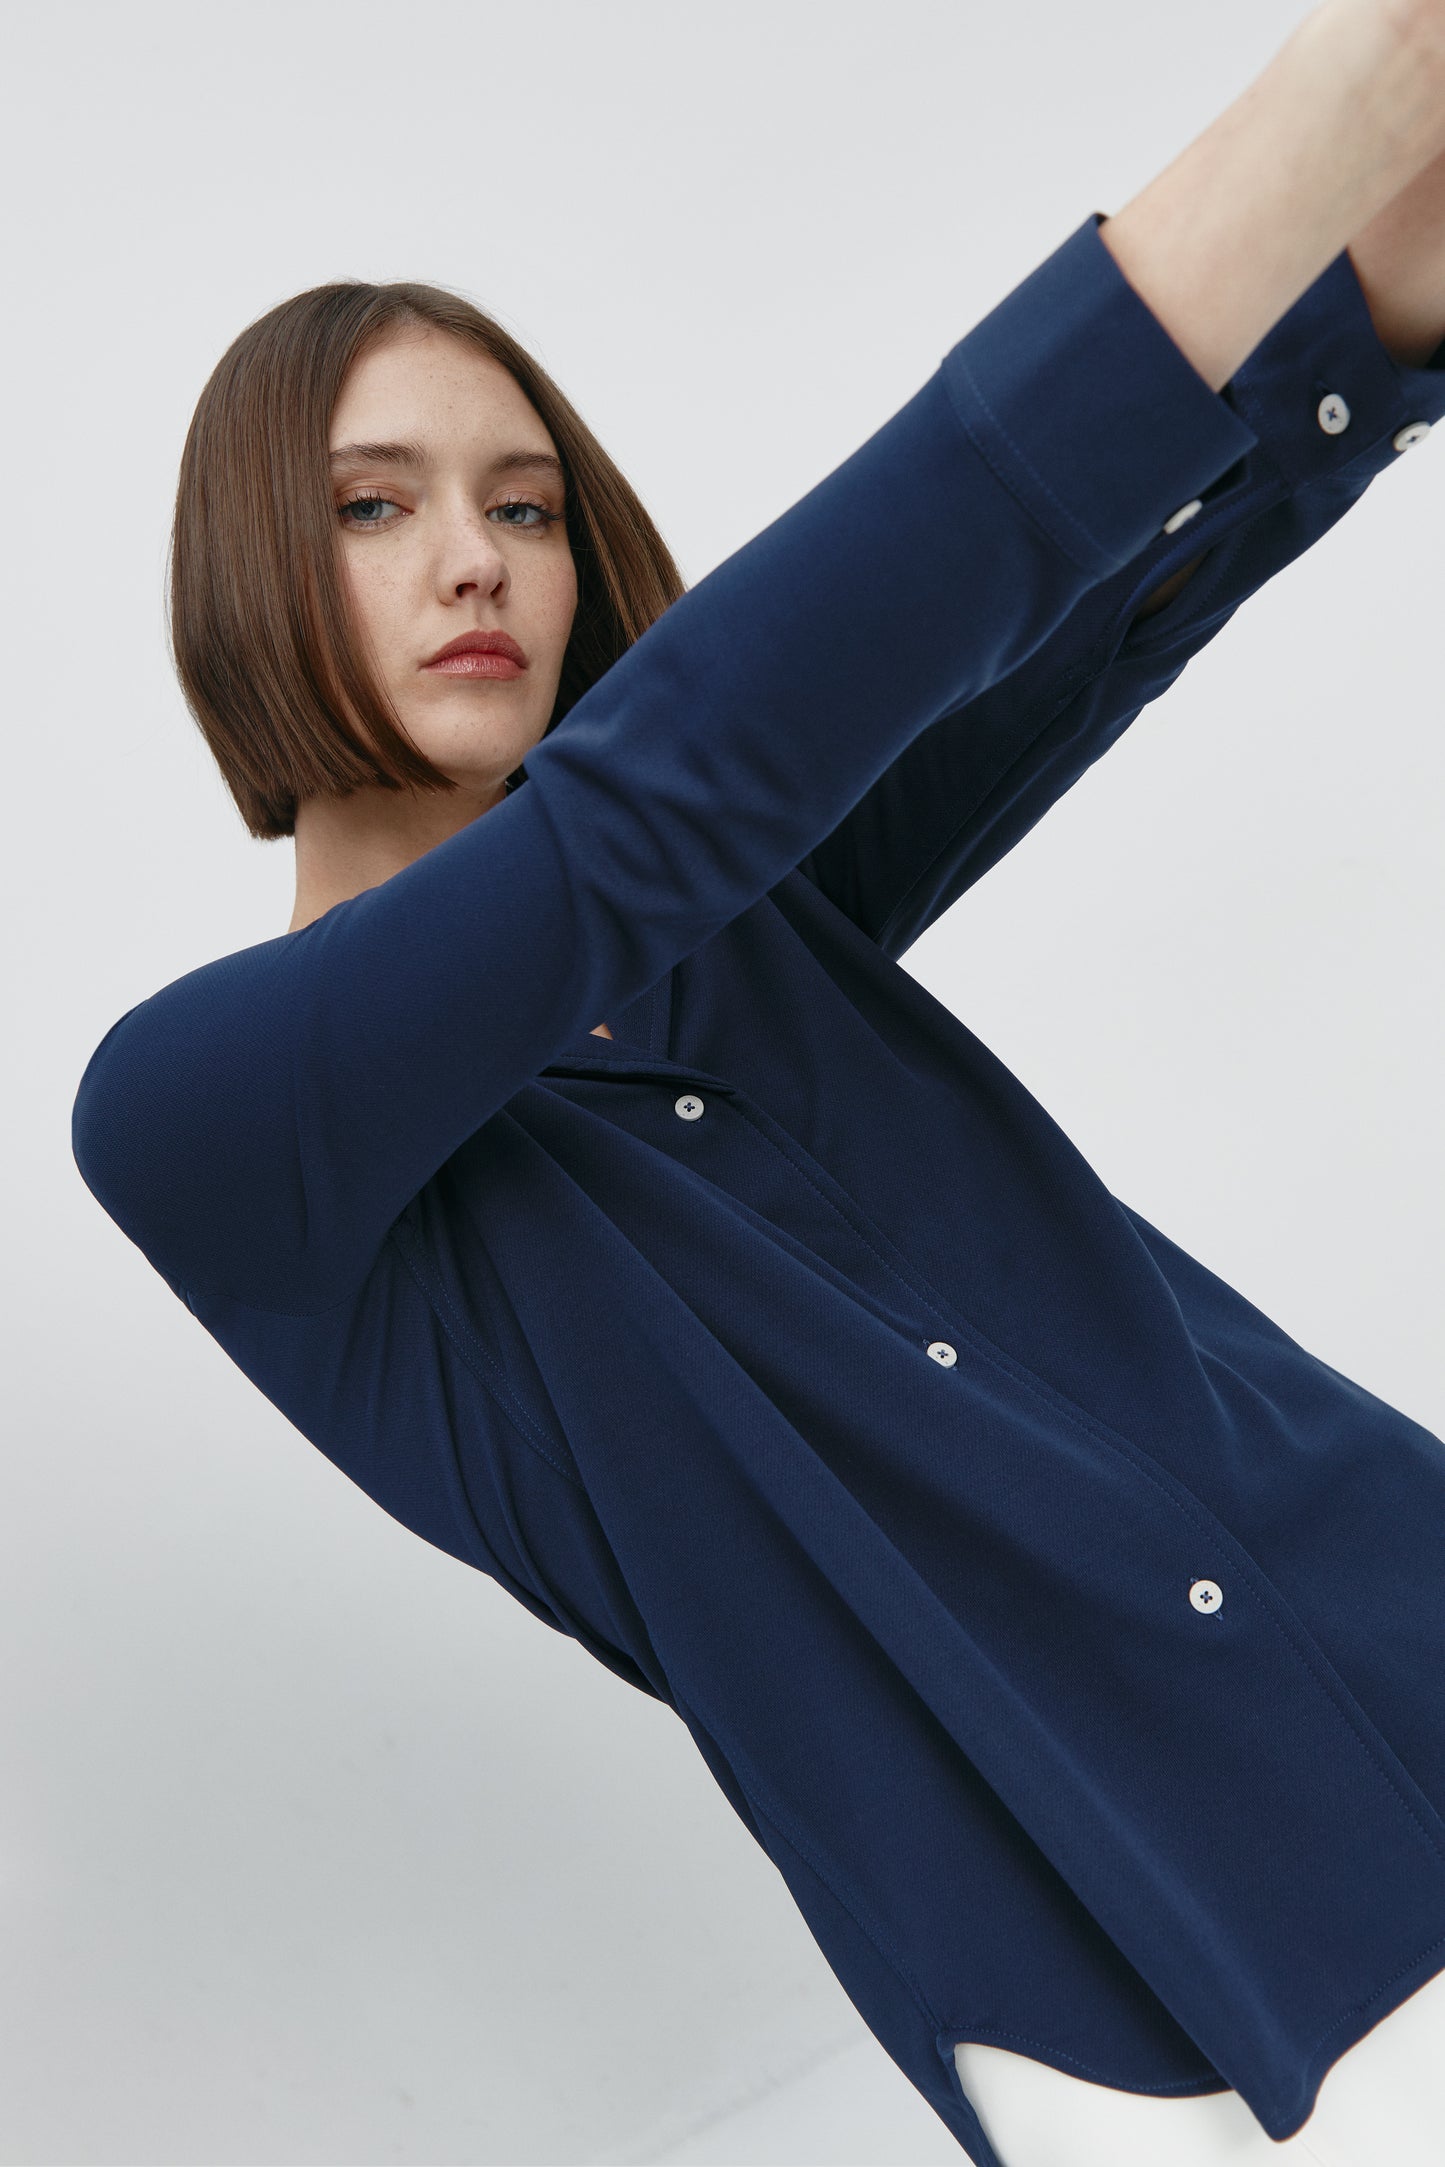 Camisa bowling de mujer azul marino de Sepiia, estilo y versatilidad en una prenda cómoda y resistente. Foto flexibilidad